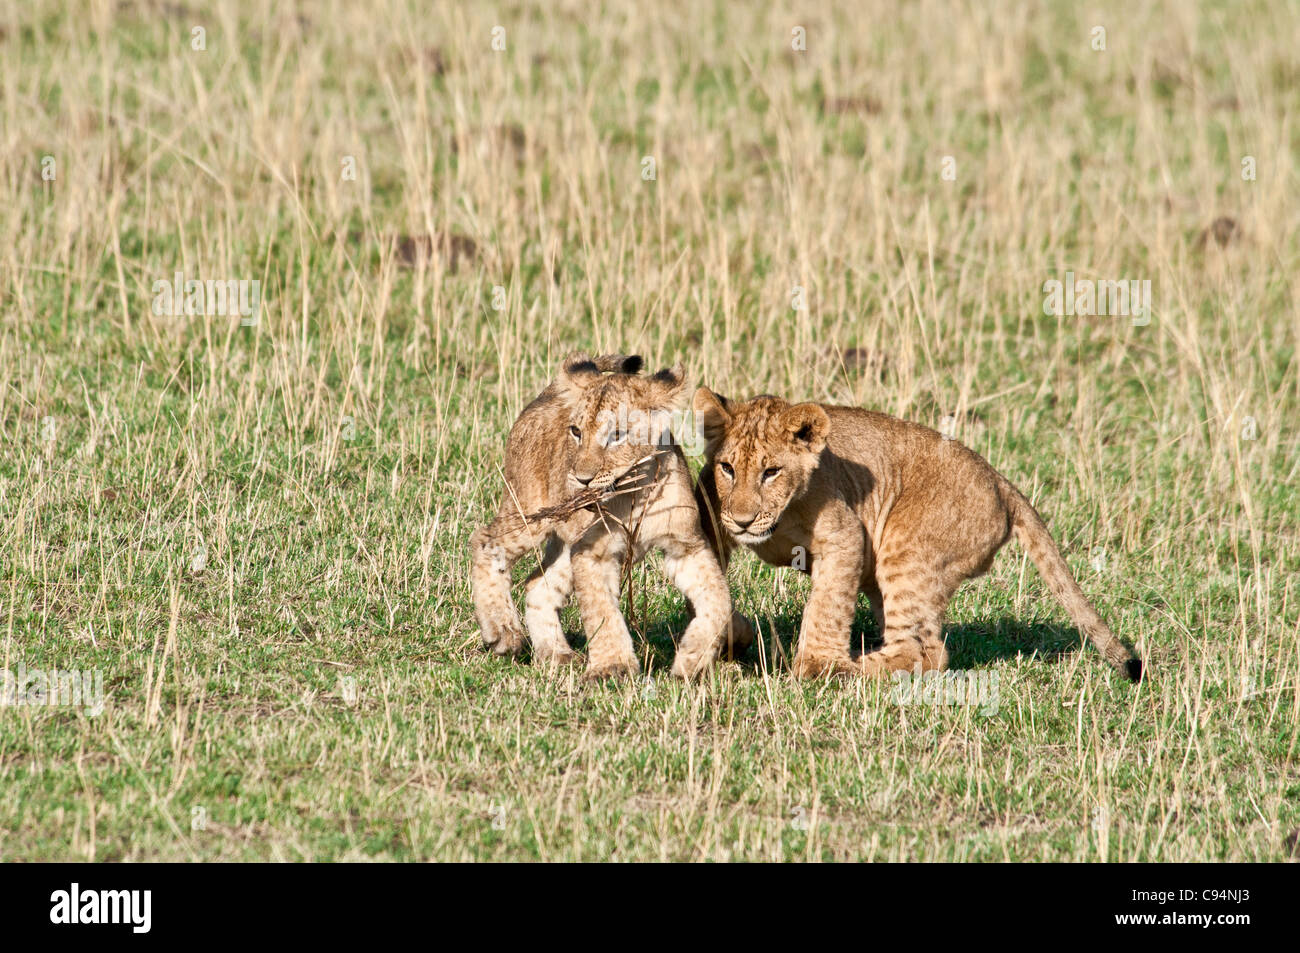 Deux Lionceaux côte à côte, Panthera leo, Masai Mara National Reserve, Kenya, Africa Banque D'Images